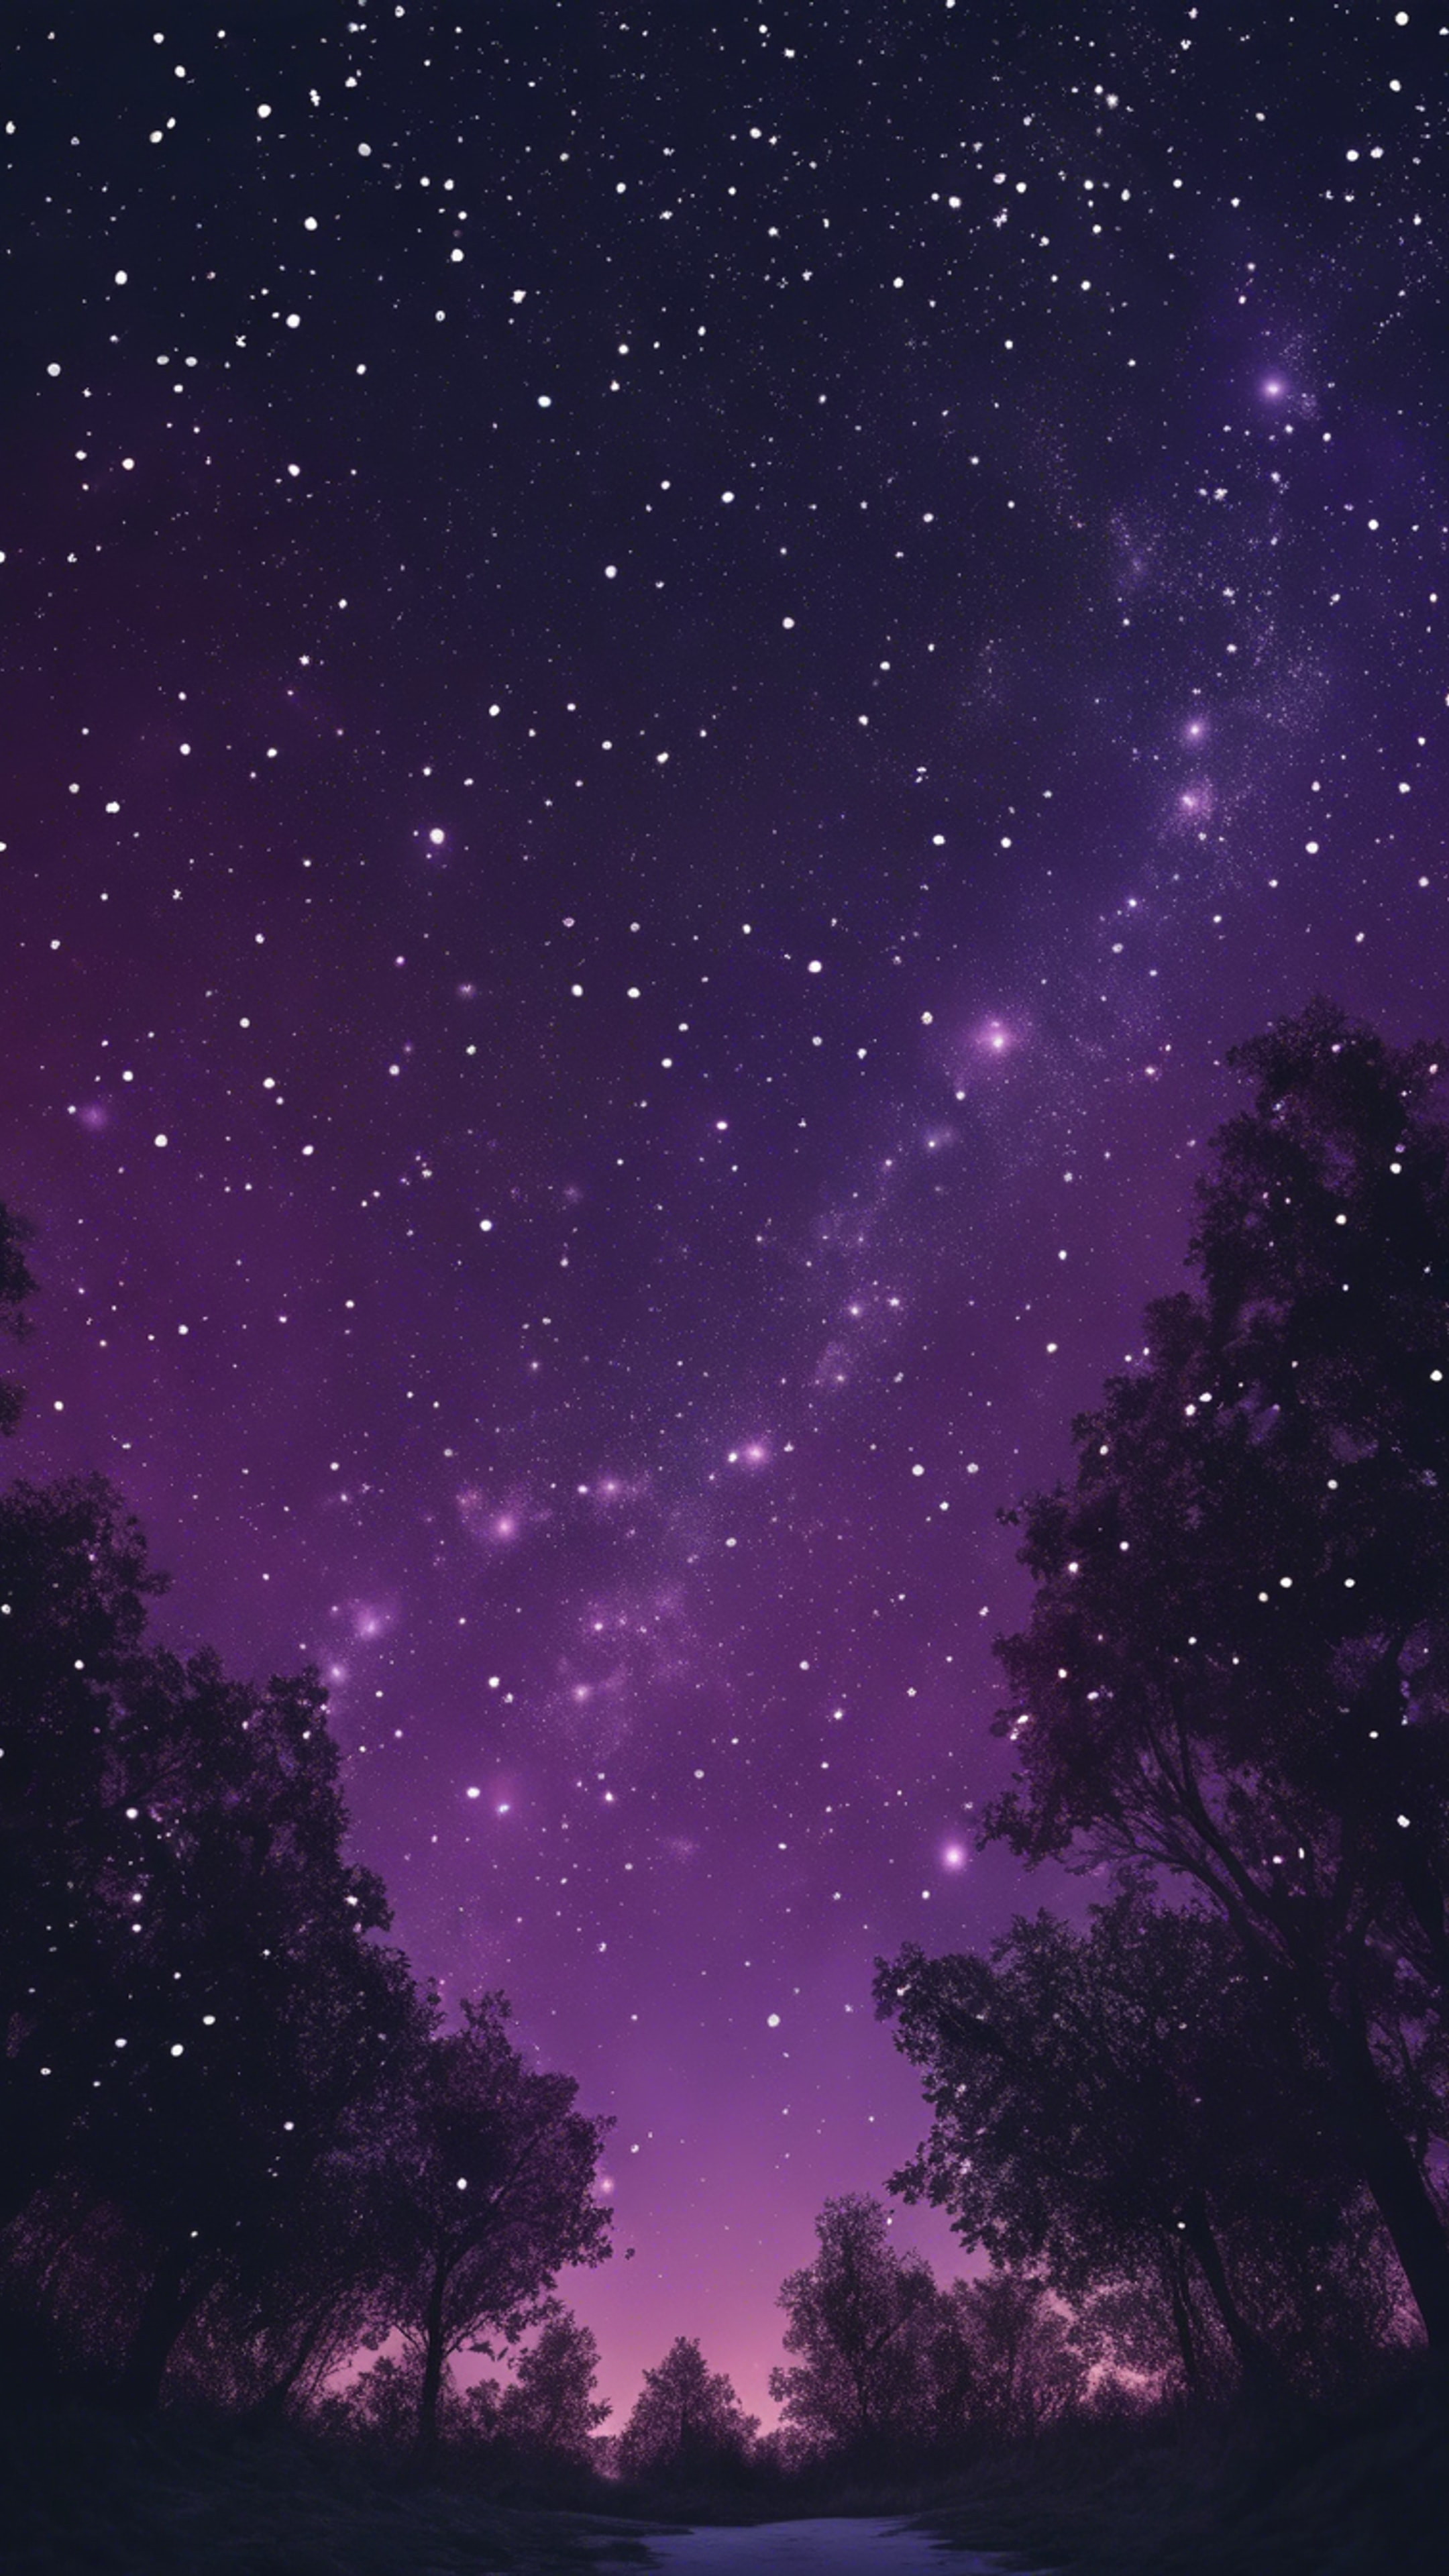 A dark purple night sky filled with glistening stars. Tapeta[87bc6c810d2c46c9bff9]